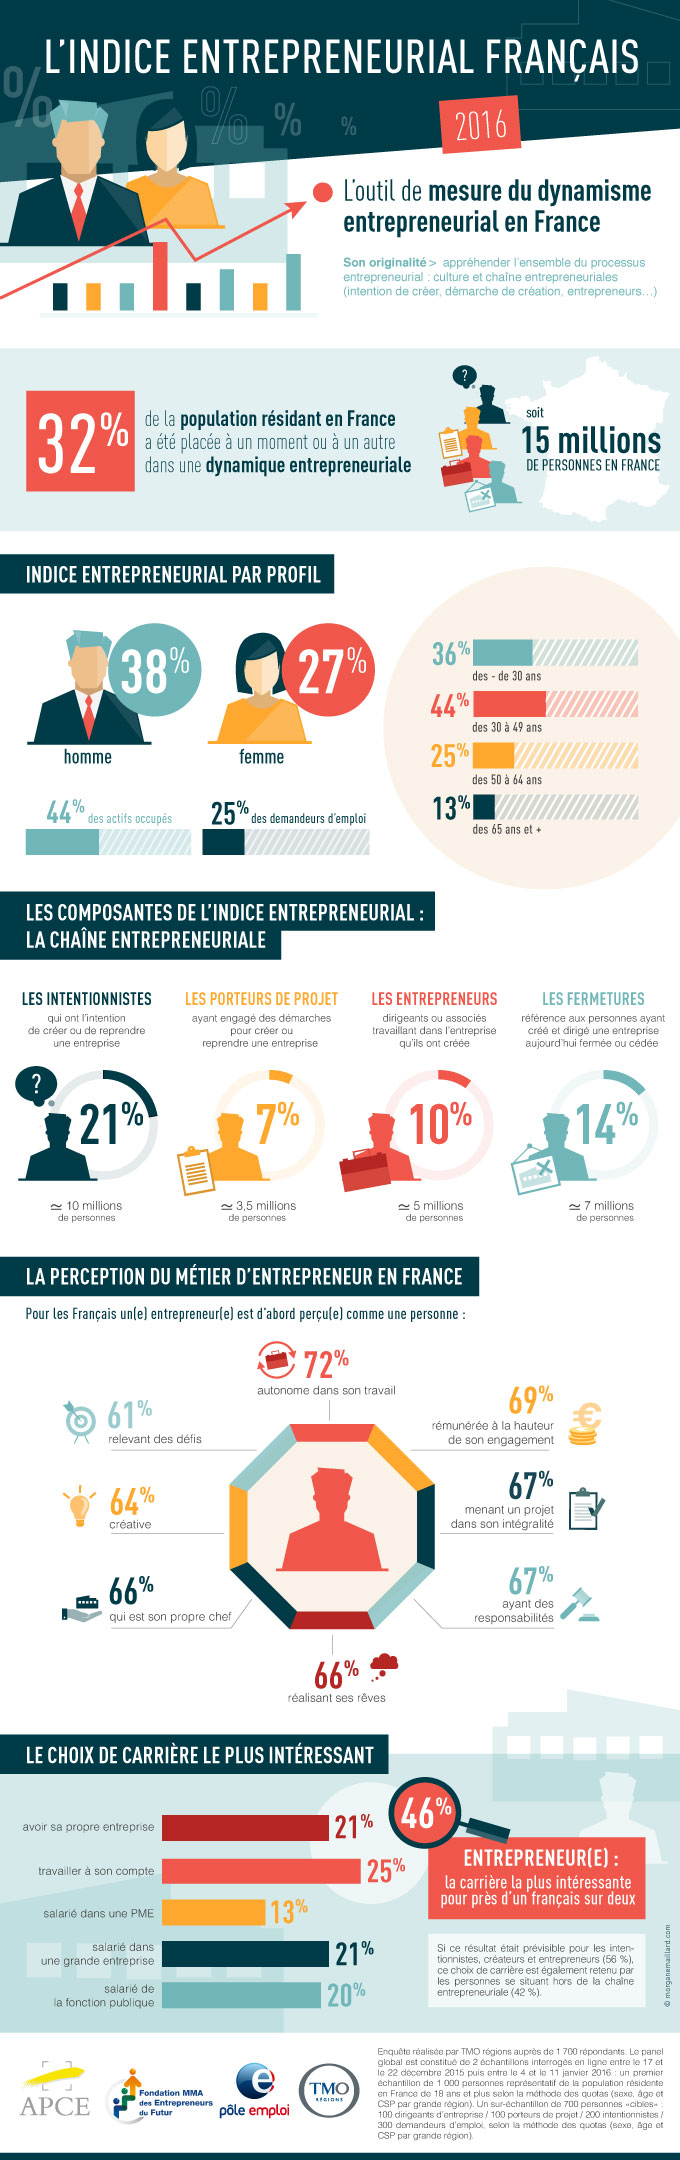 Infographie Indice Entrepreneurial Français